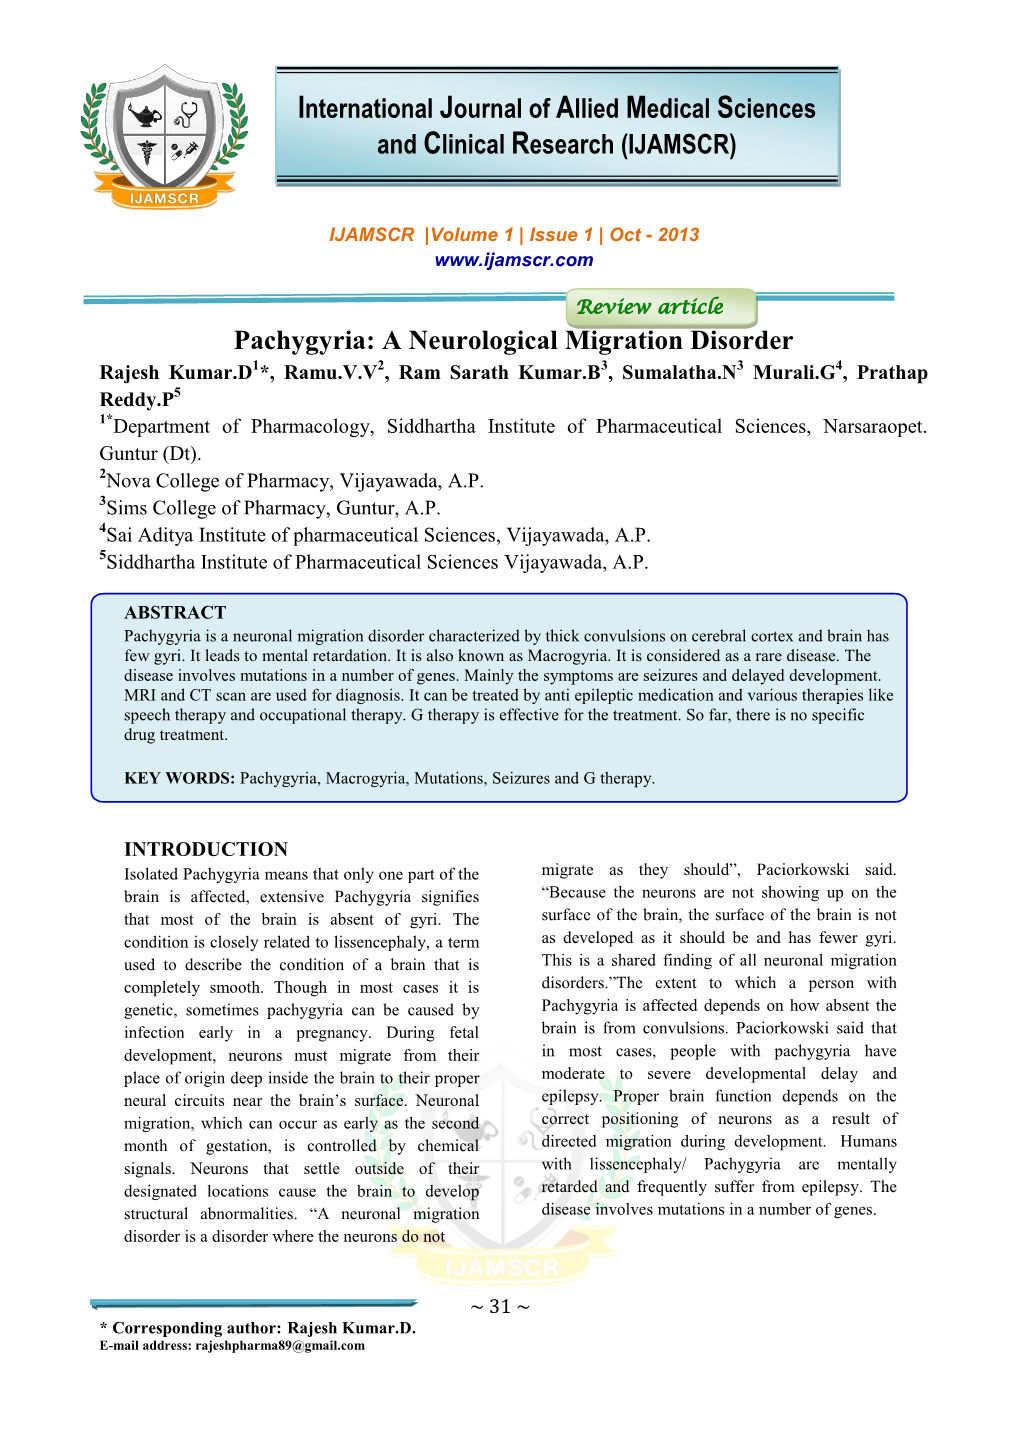 Pachygyria: a Neurological Migration Disorder International Journal Of